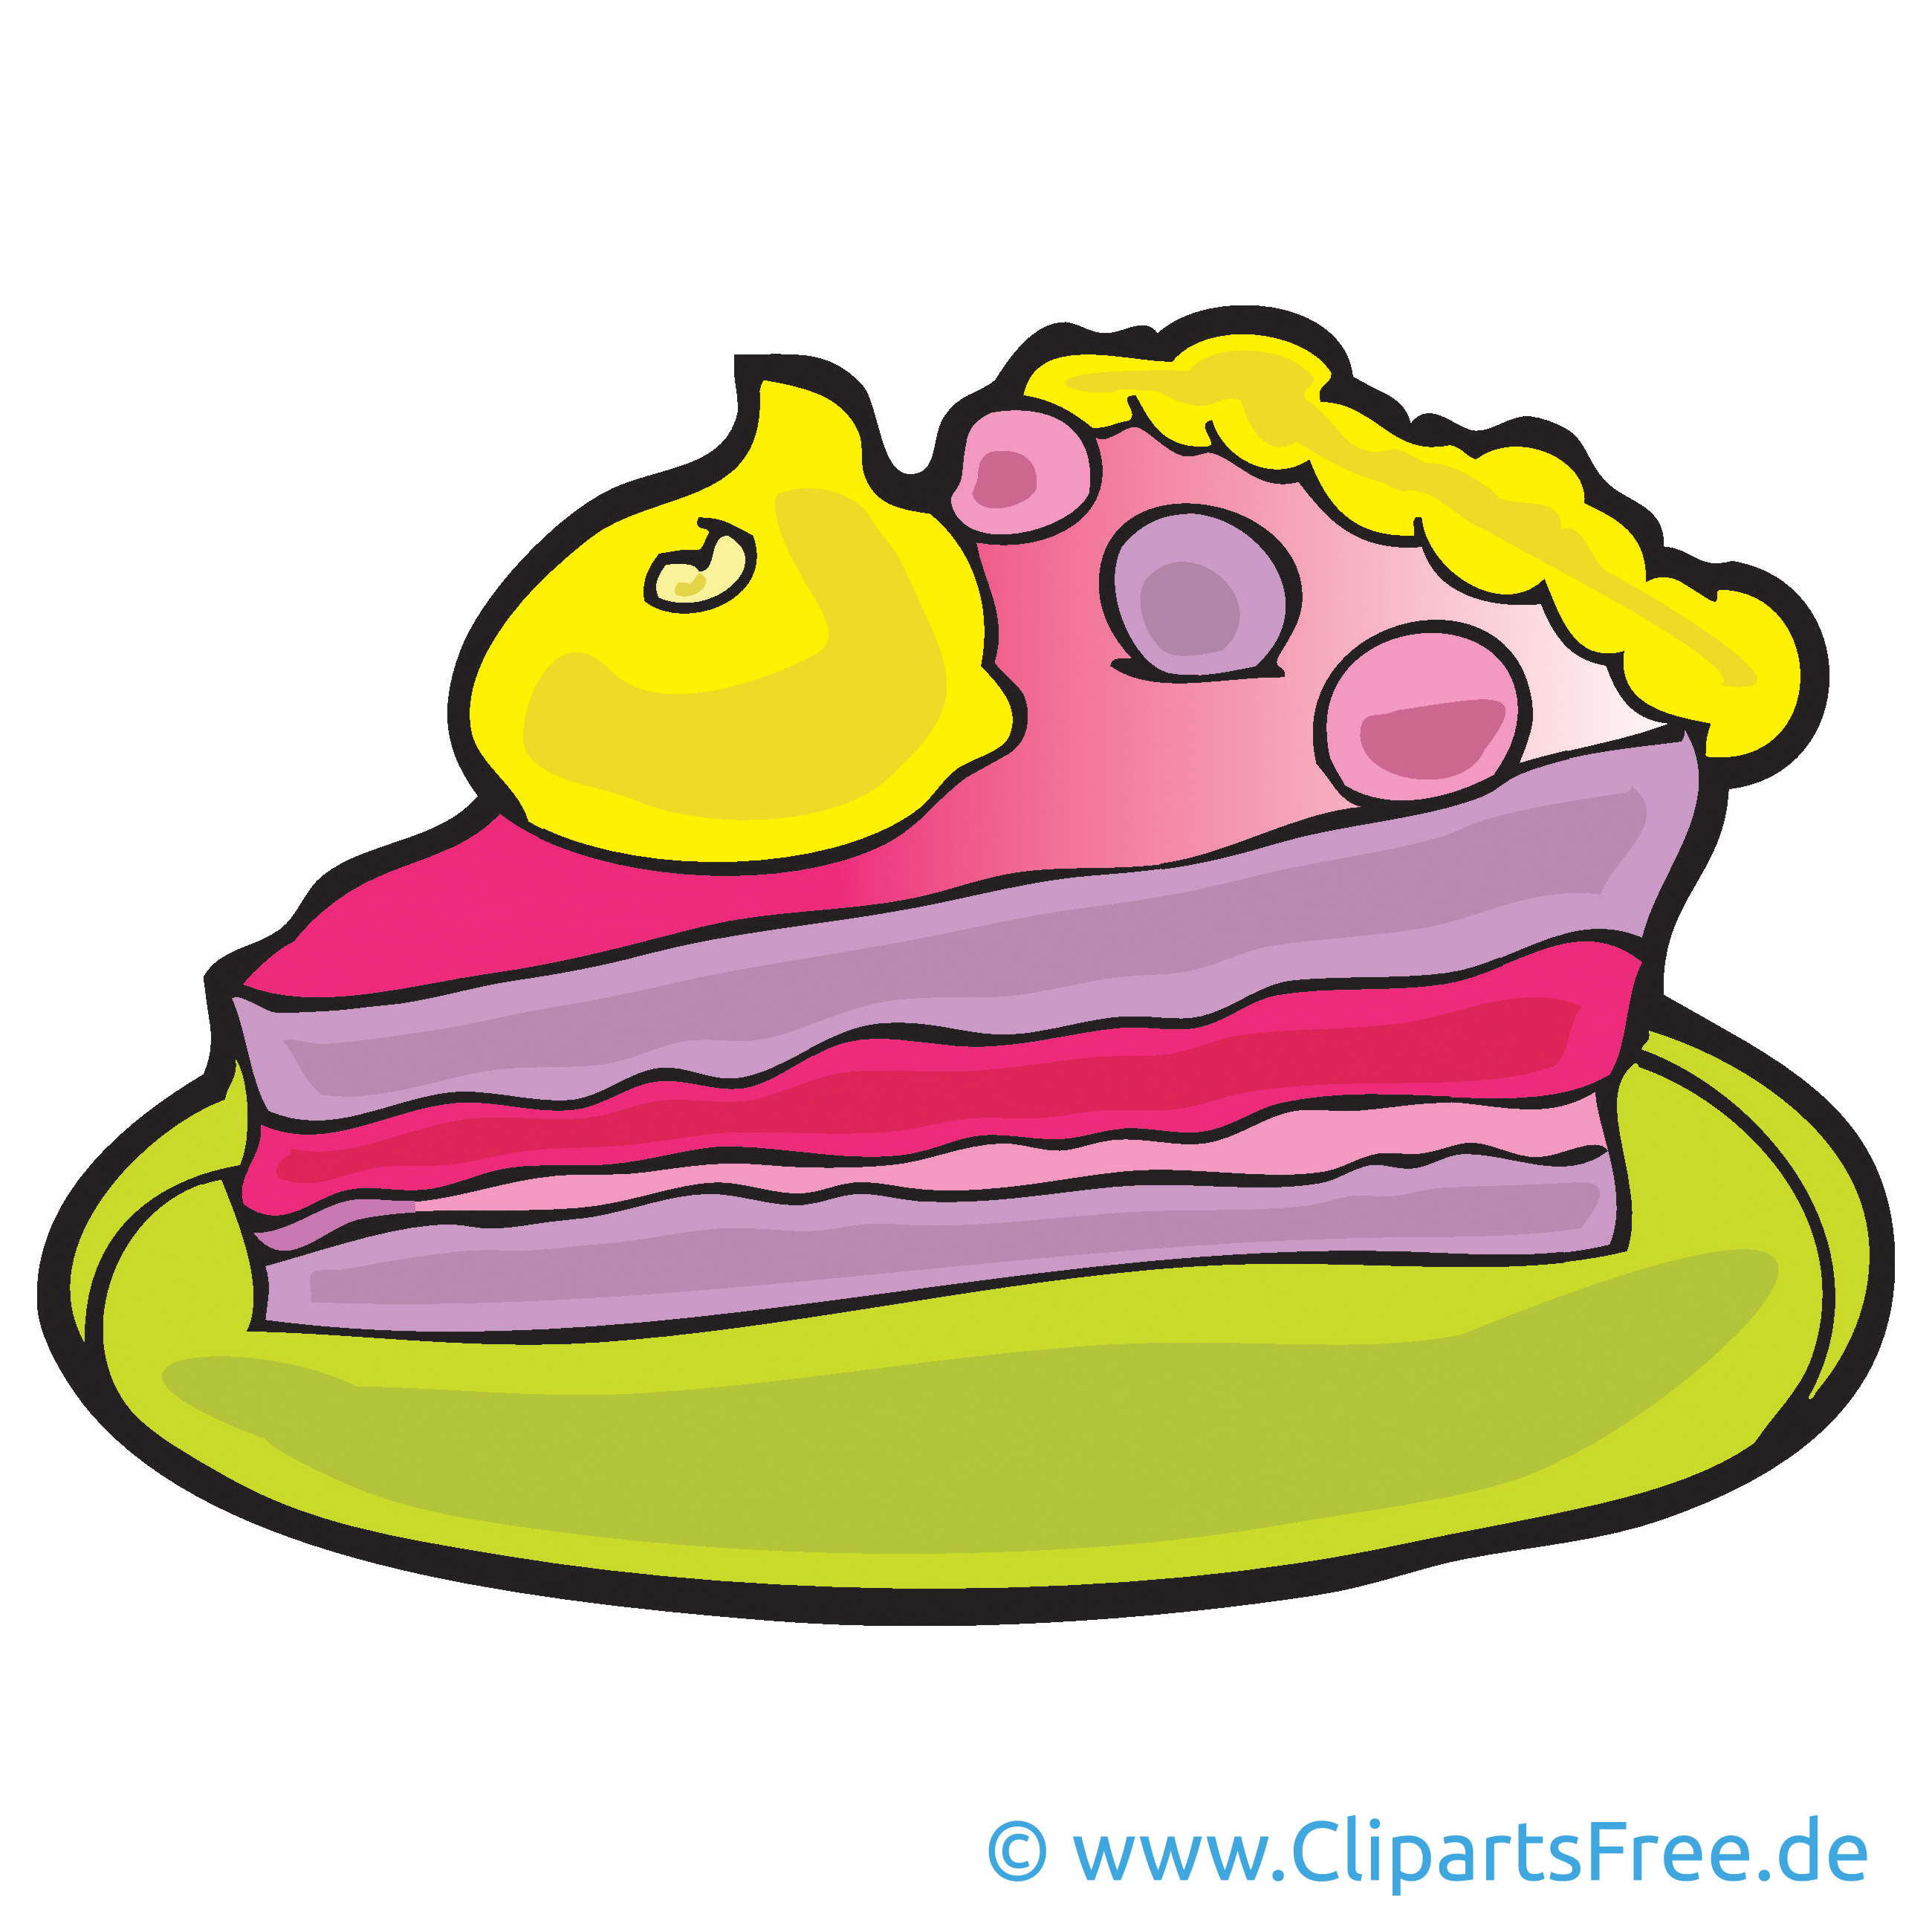 clipart kostenlos torte - photo #9